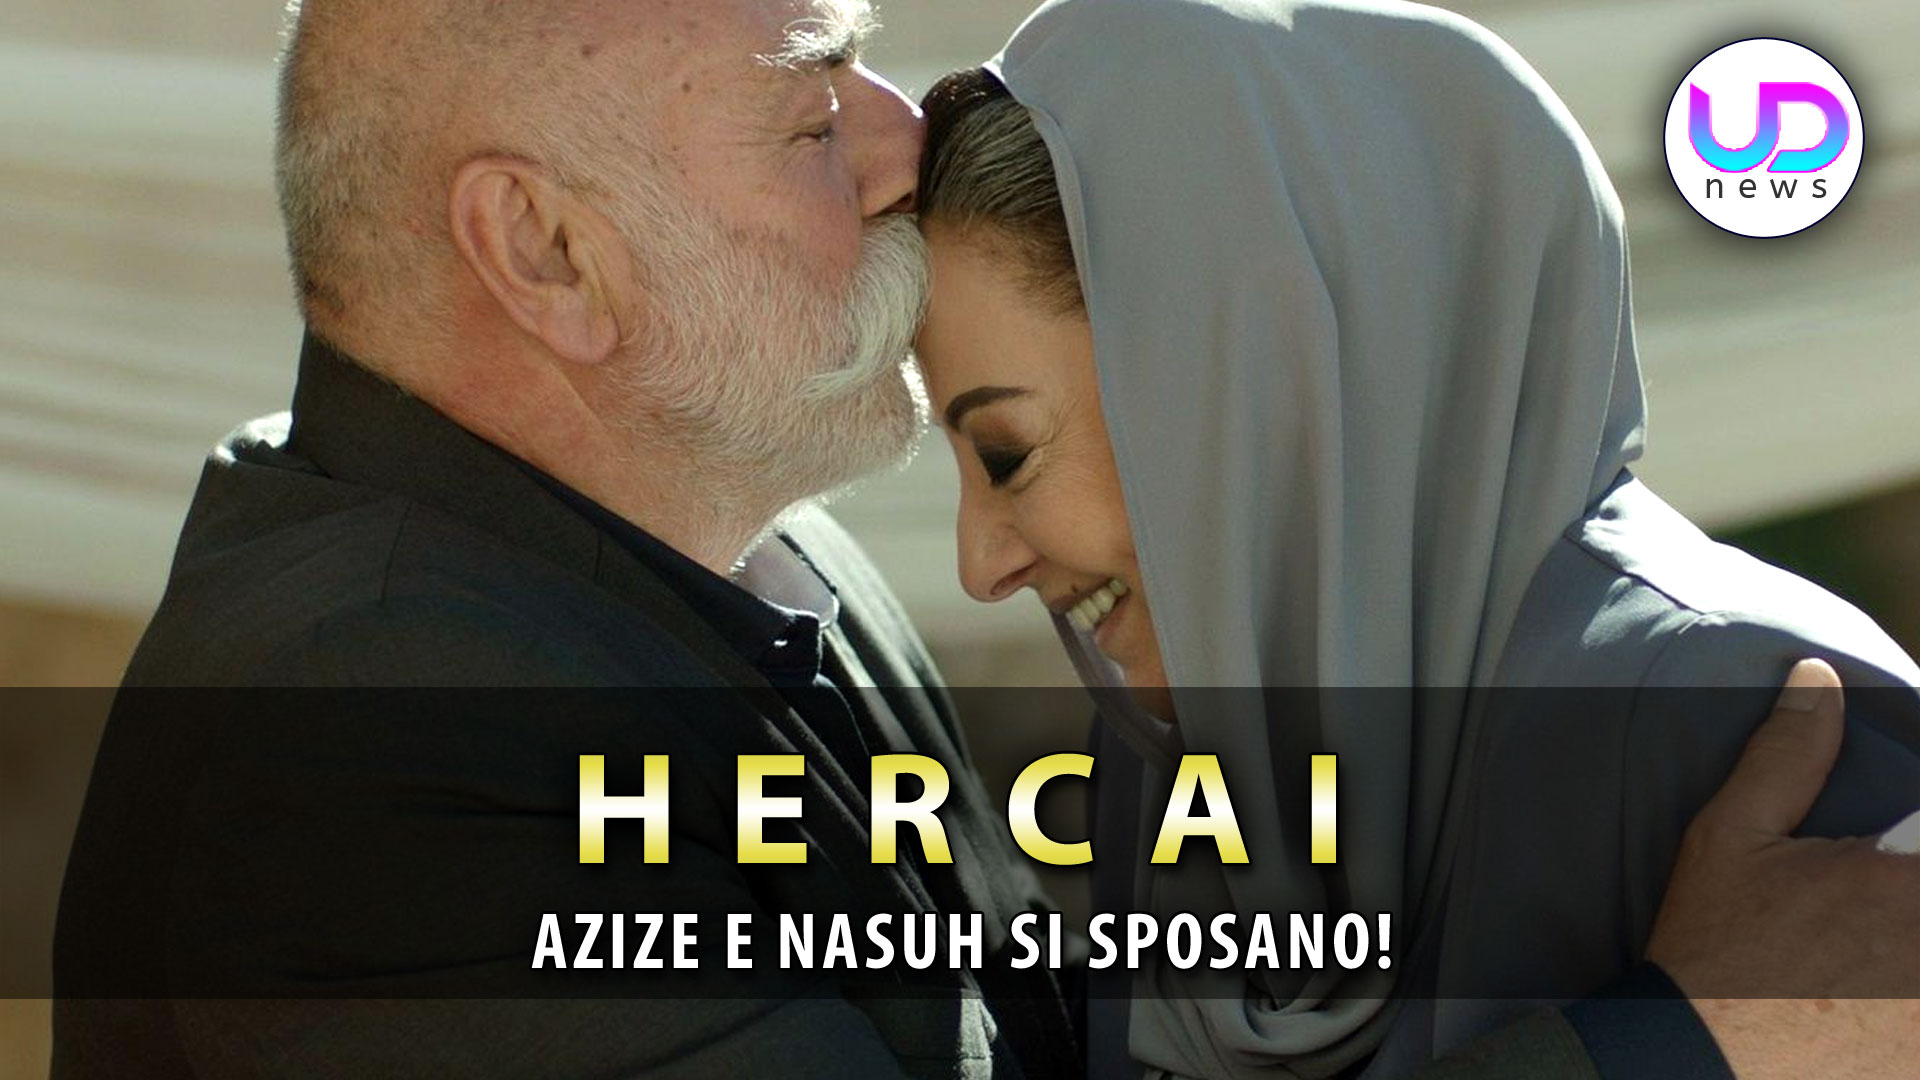 Anticipazioni Hercai, Puntate Turche: Azize Si Sposa Con Nasuh!